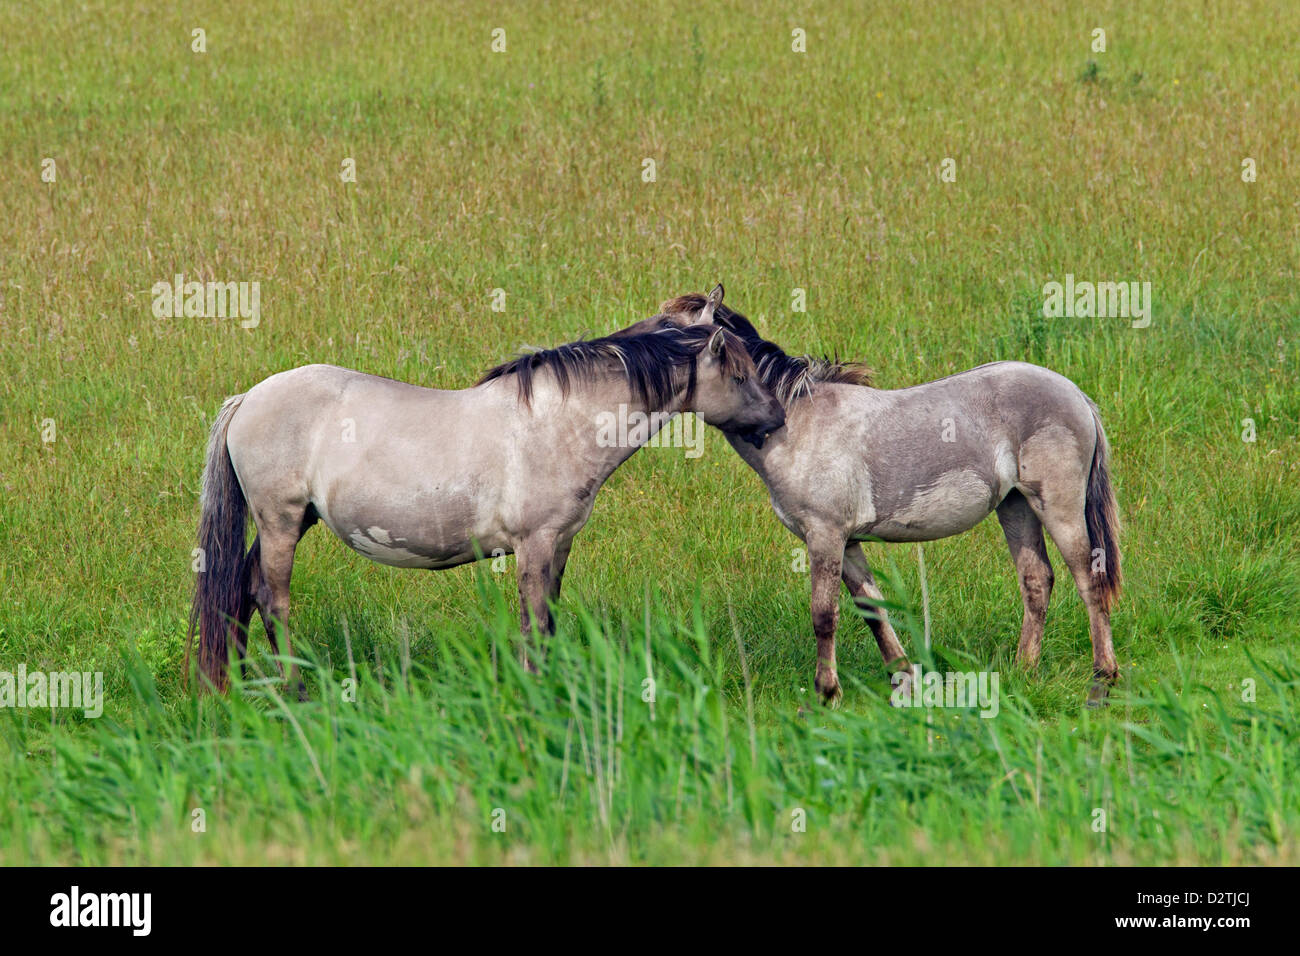 El acicalamiento mutuo / allogrooming por caballos Konik polaco en el campo, la raza de caballo primitivo de Polonia Foto de stock